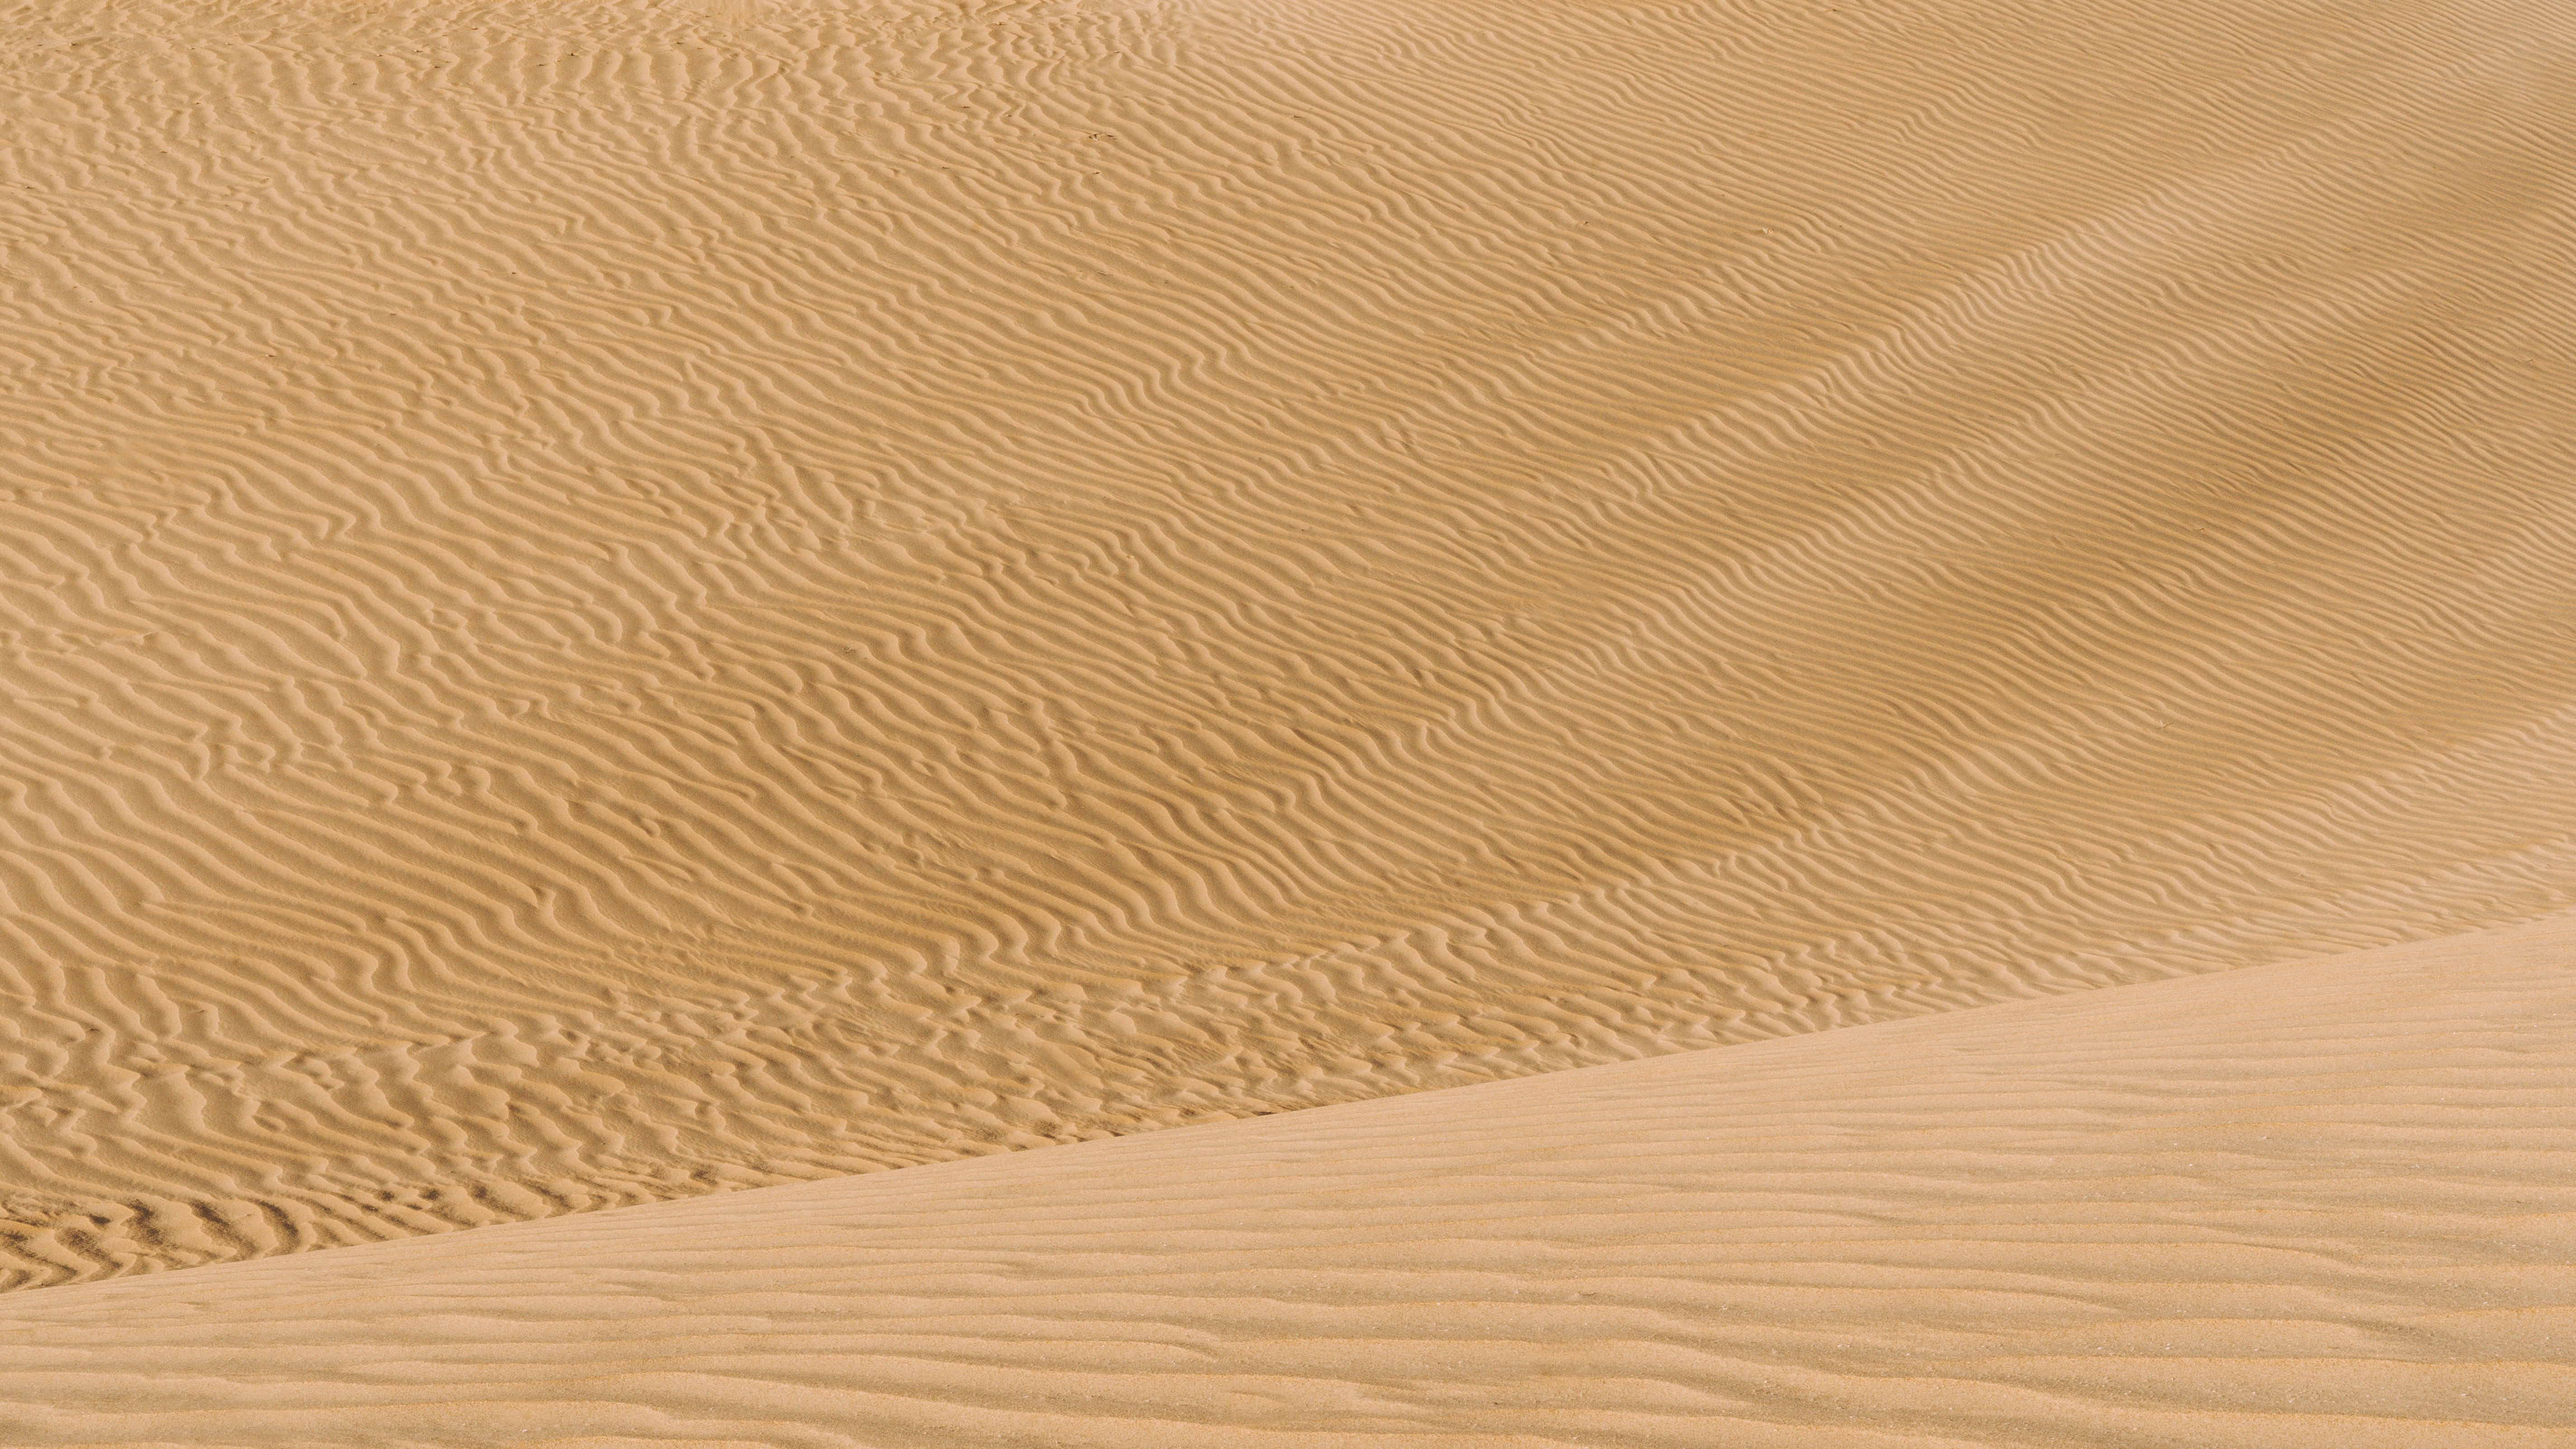 152783 descargar imagen naturaleza, arena, desierto, ondulado, dunas: fondos de pantalla y protectores de pantalla gratis